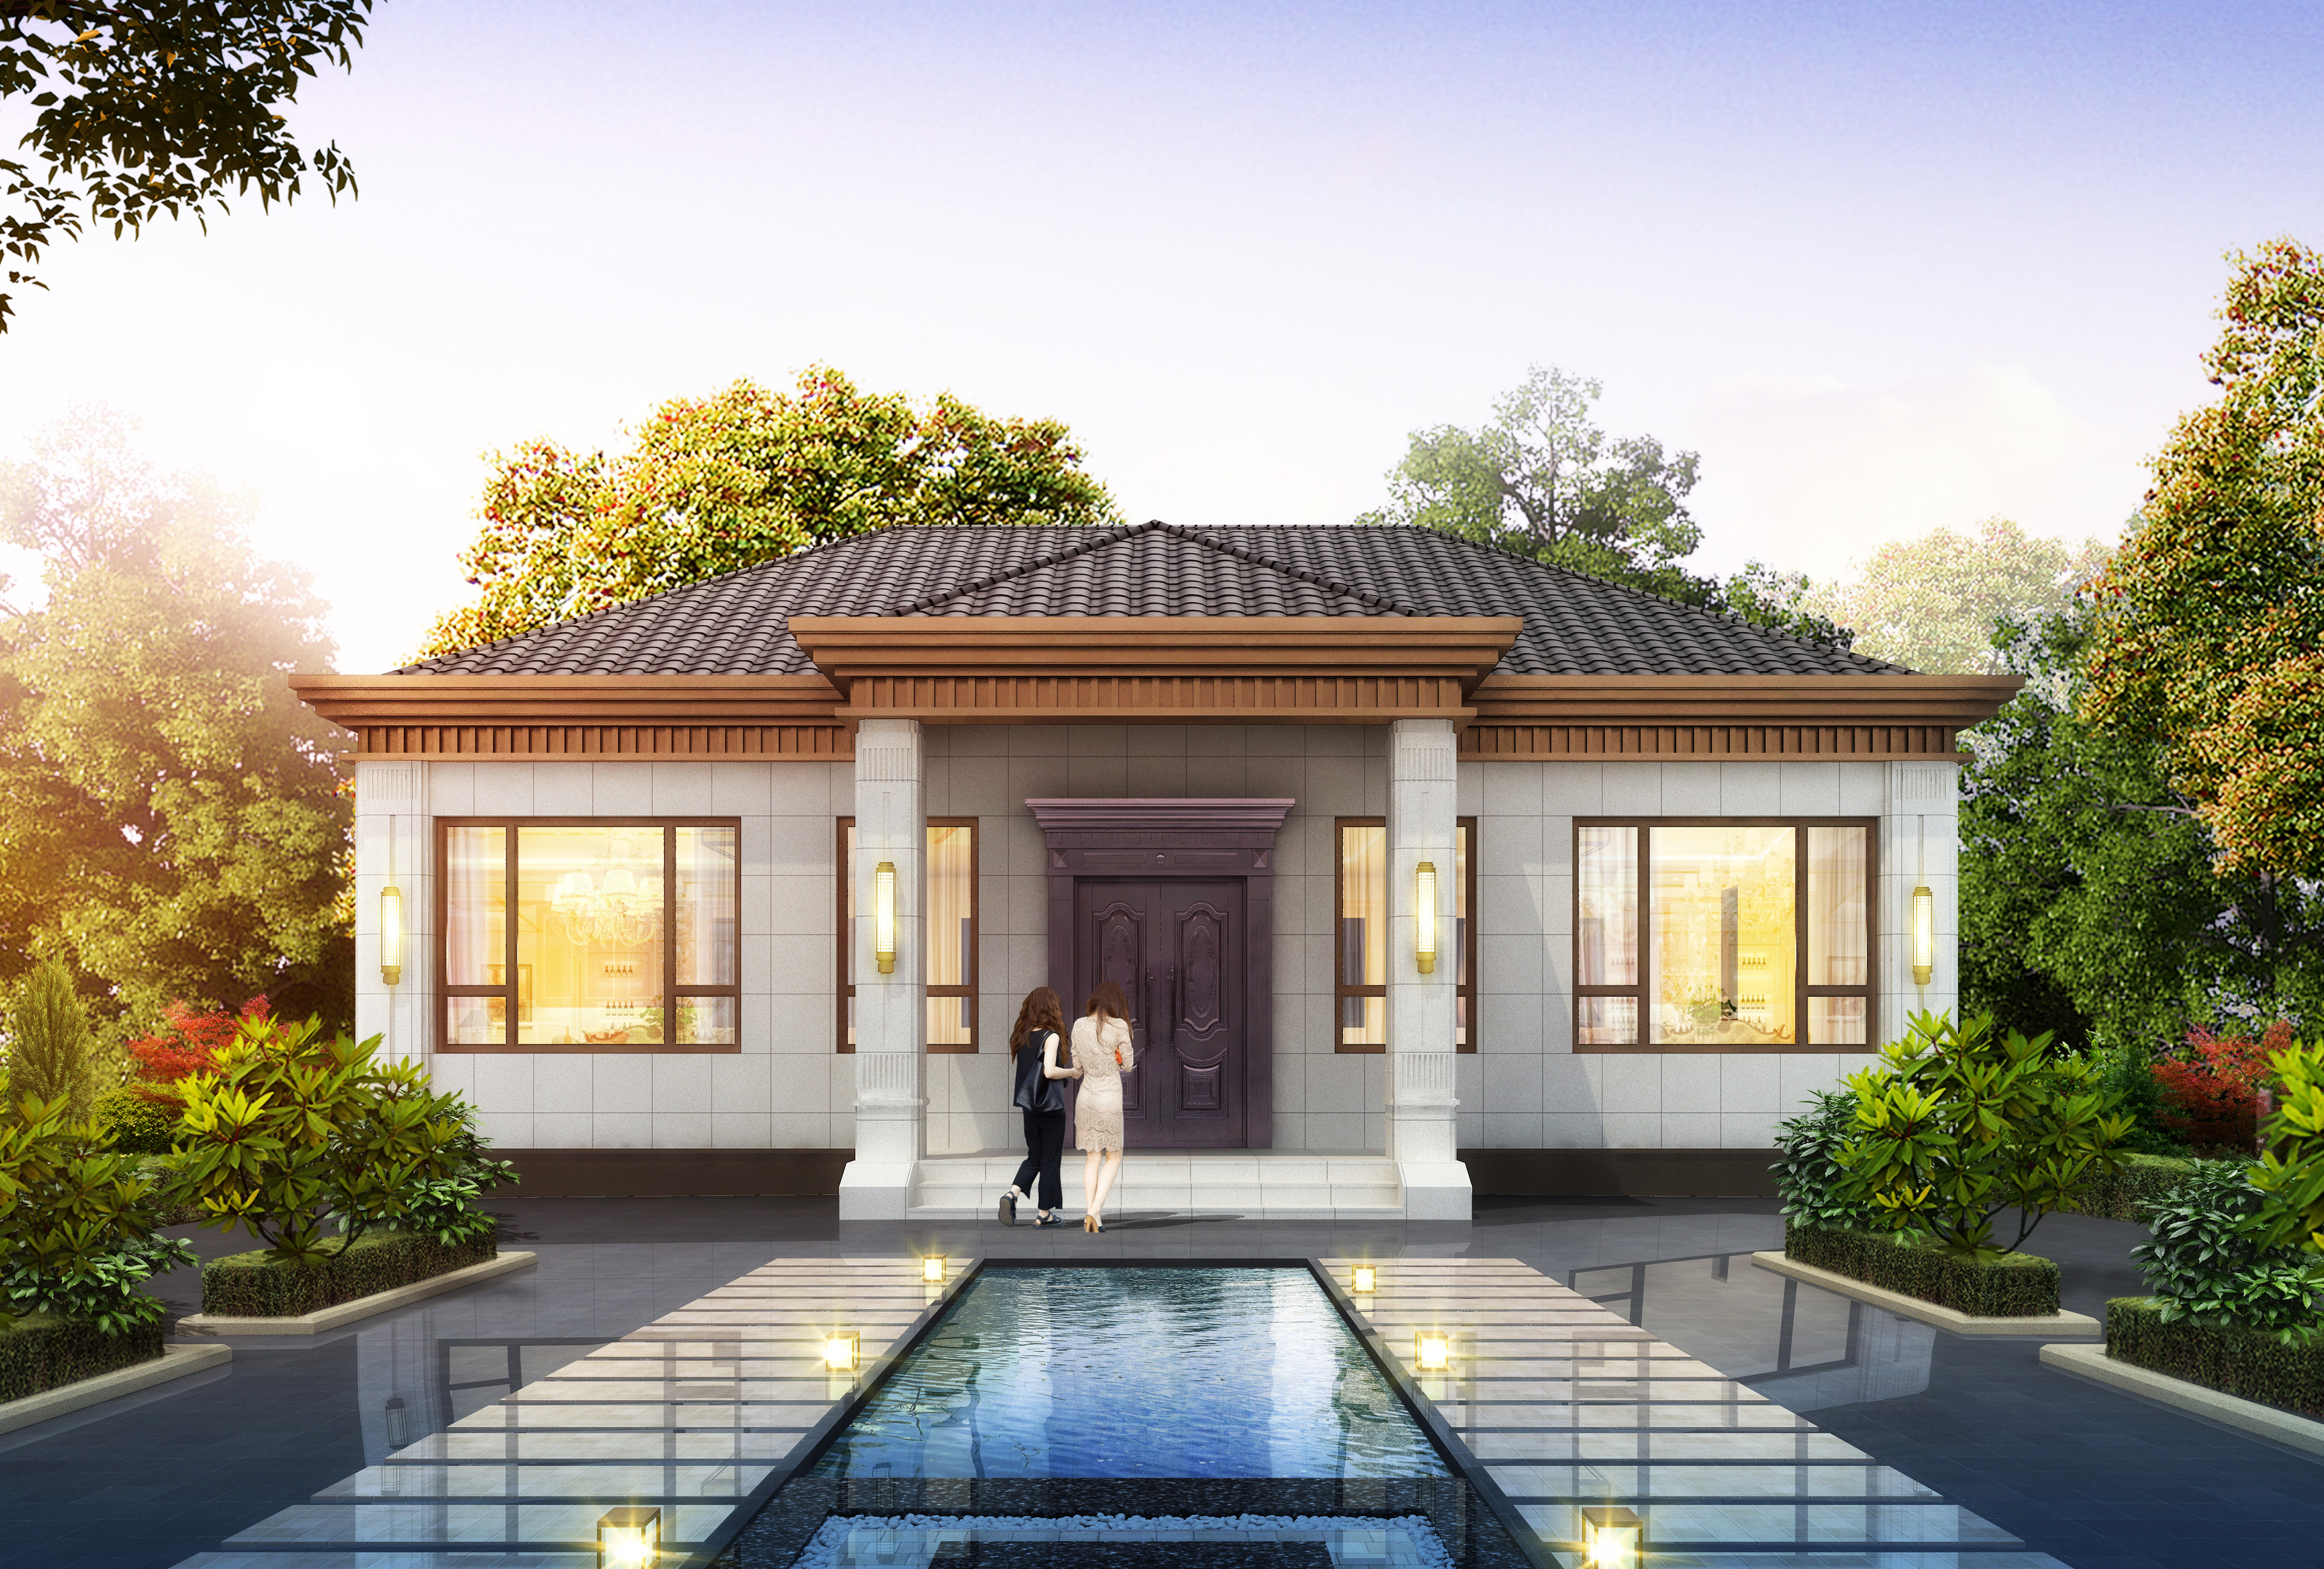 新中式简单大气一层别墅设计图纸新农村自建房设计经典户型小洋房